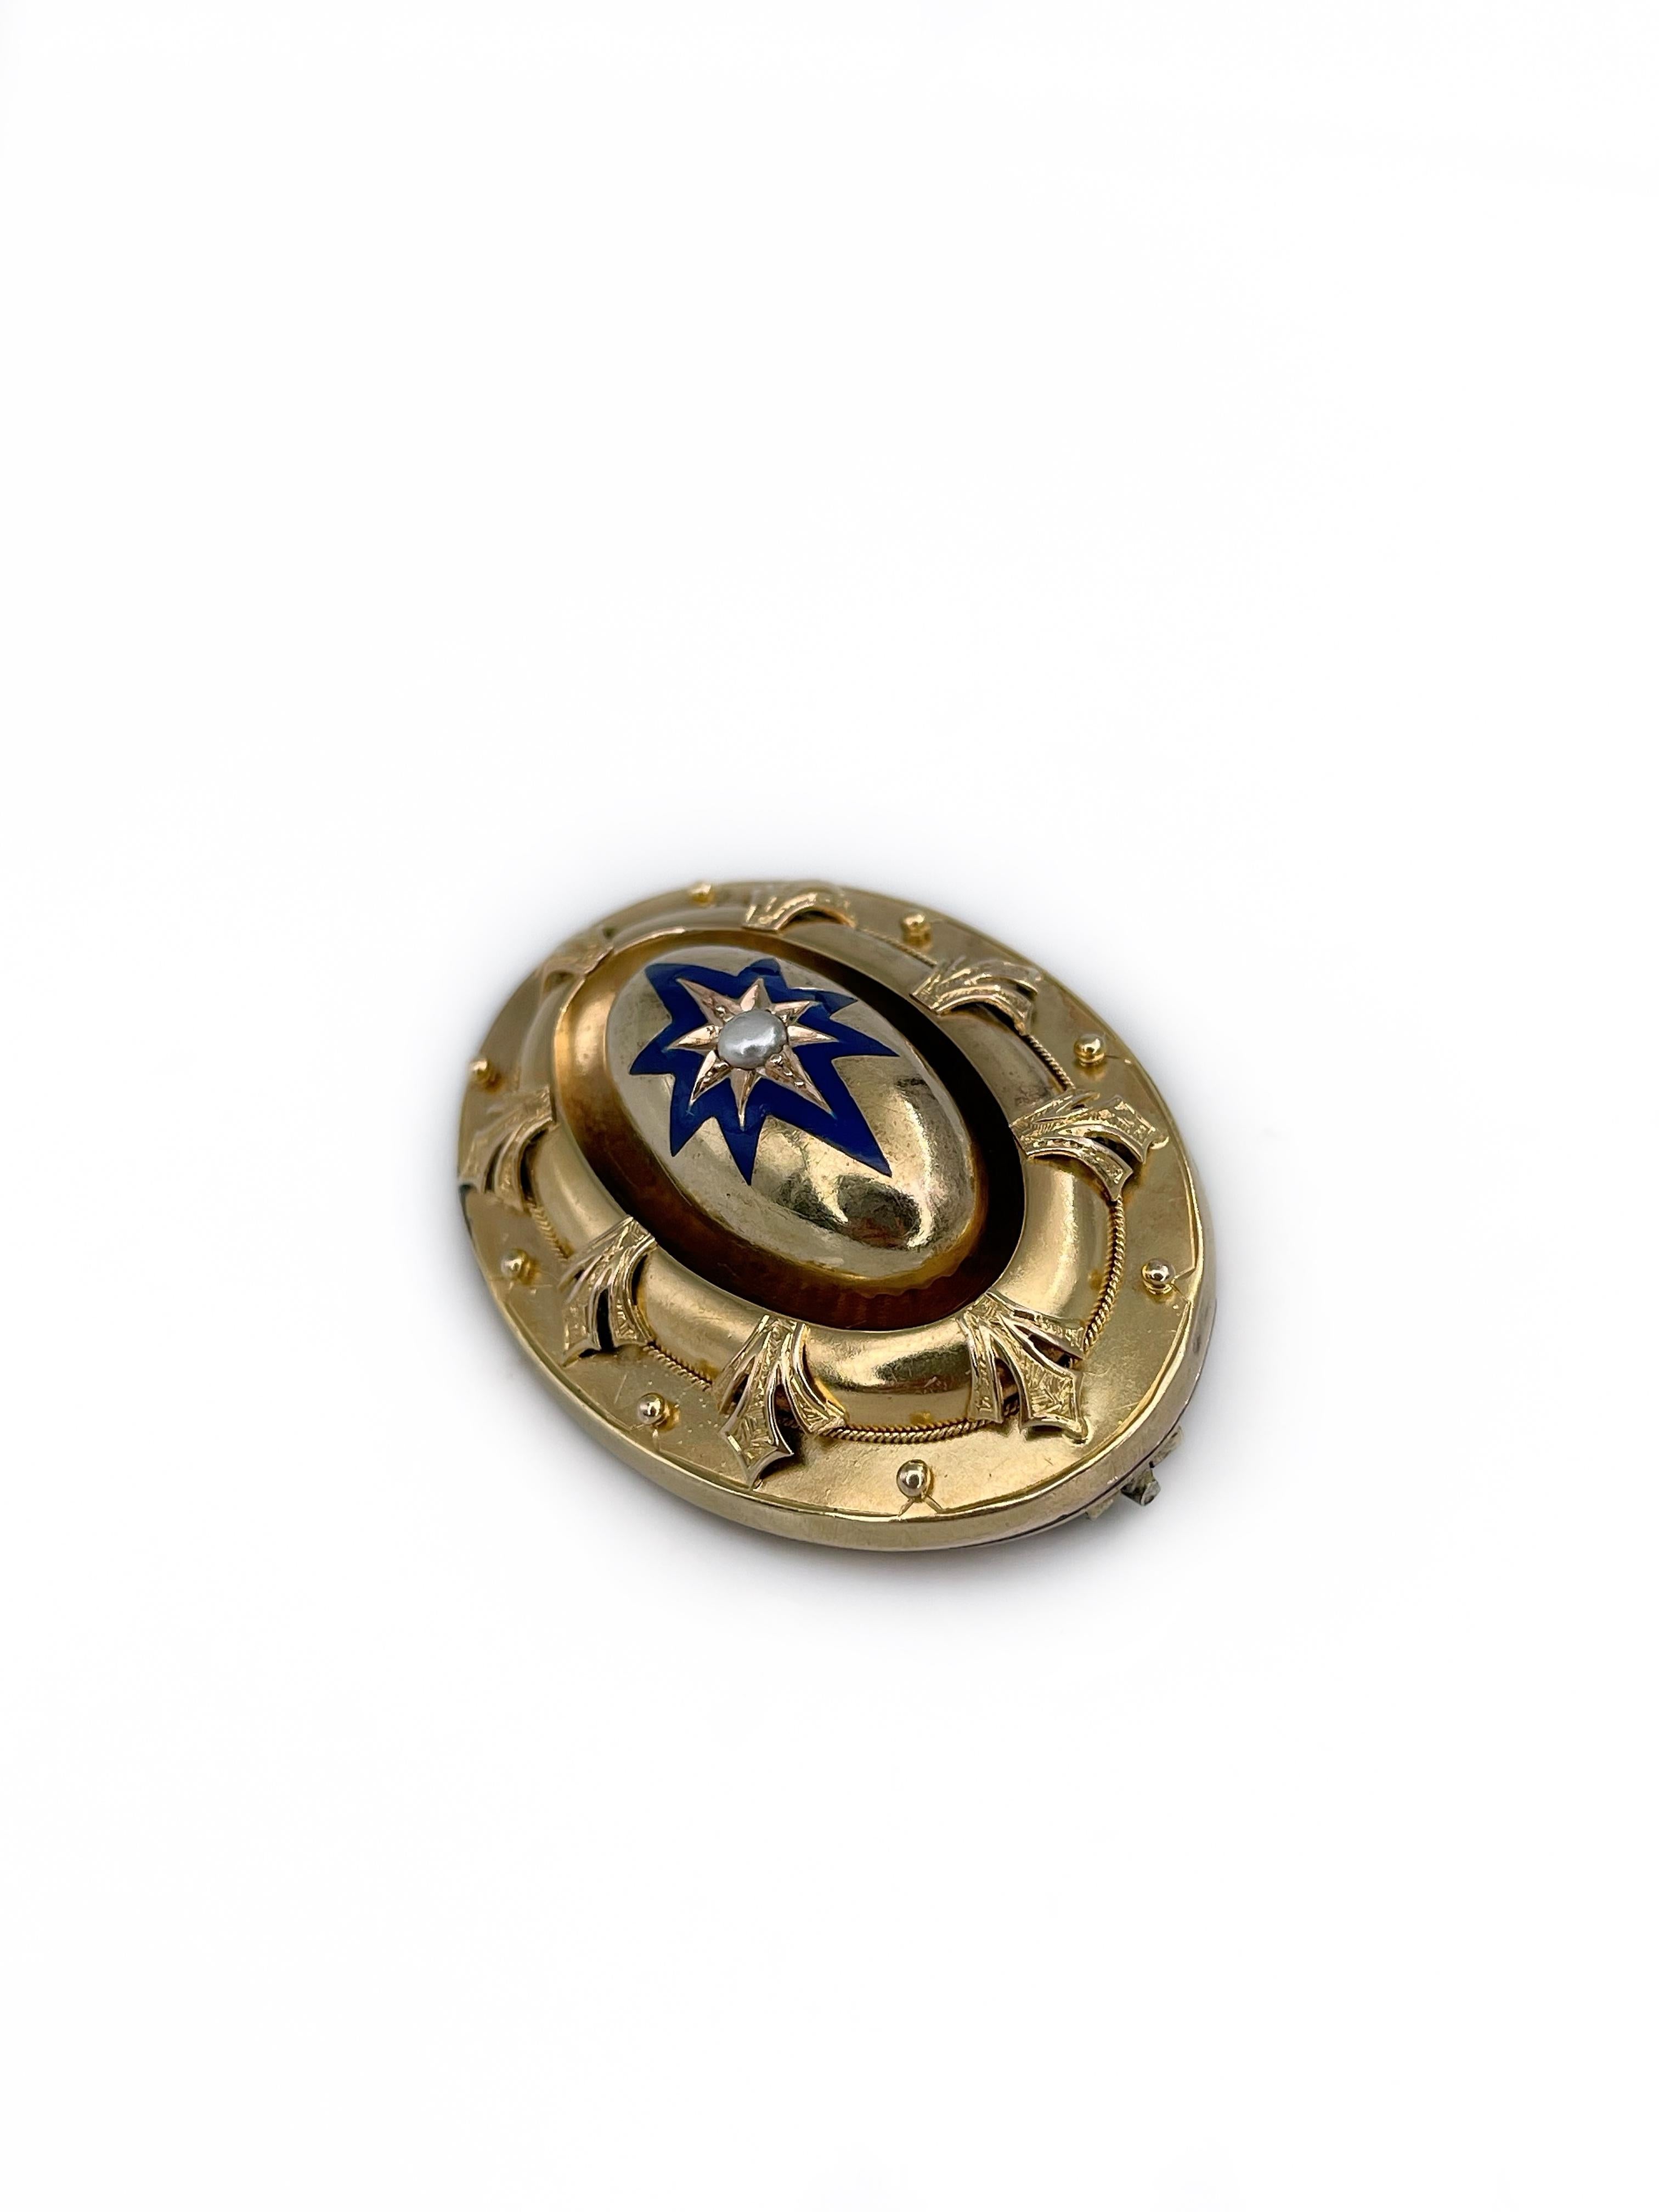 Women's or Men's Victorian Etruscan 15 Karat Gold Blue Enamel Pearl Star Motif Locket Pin Brooch For Sale